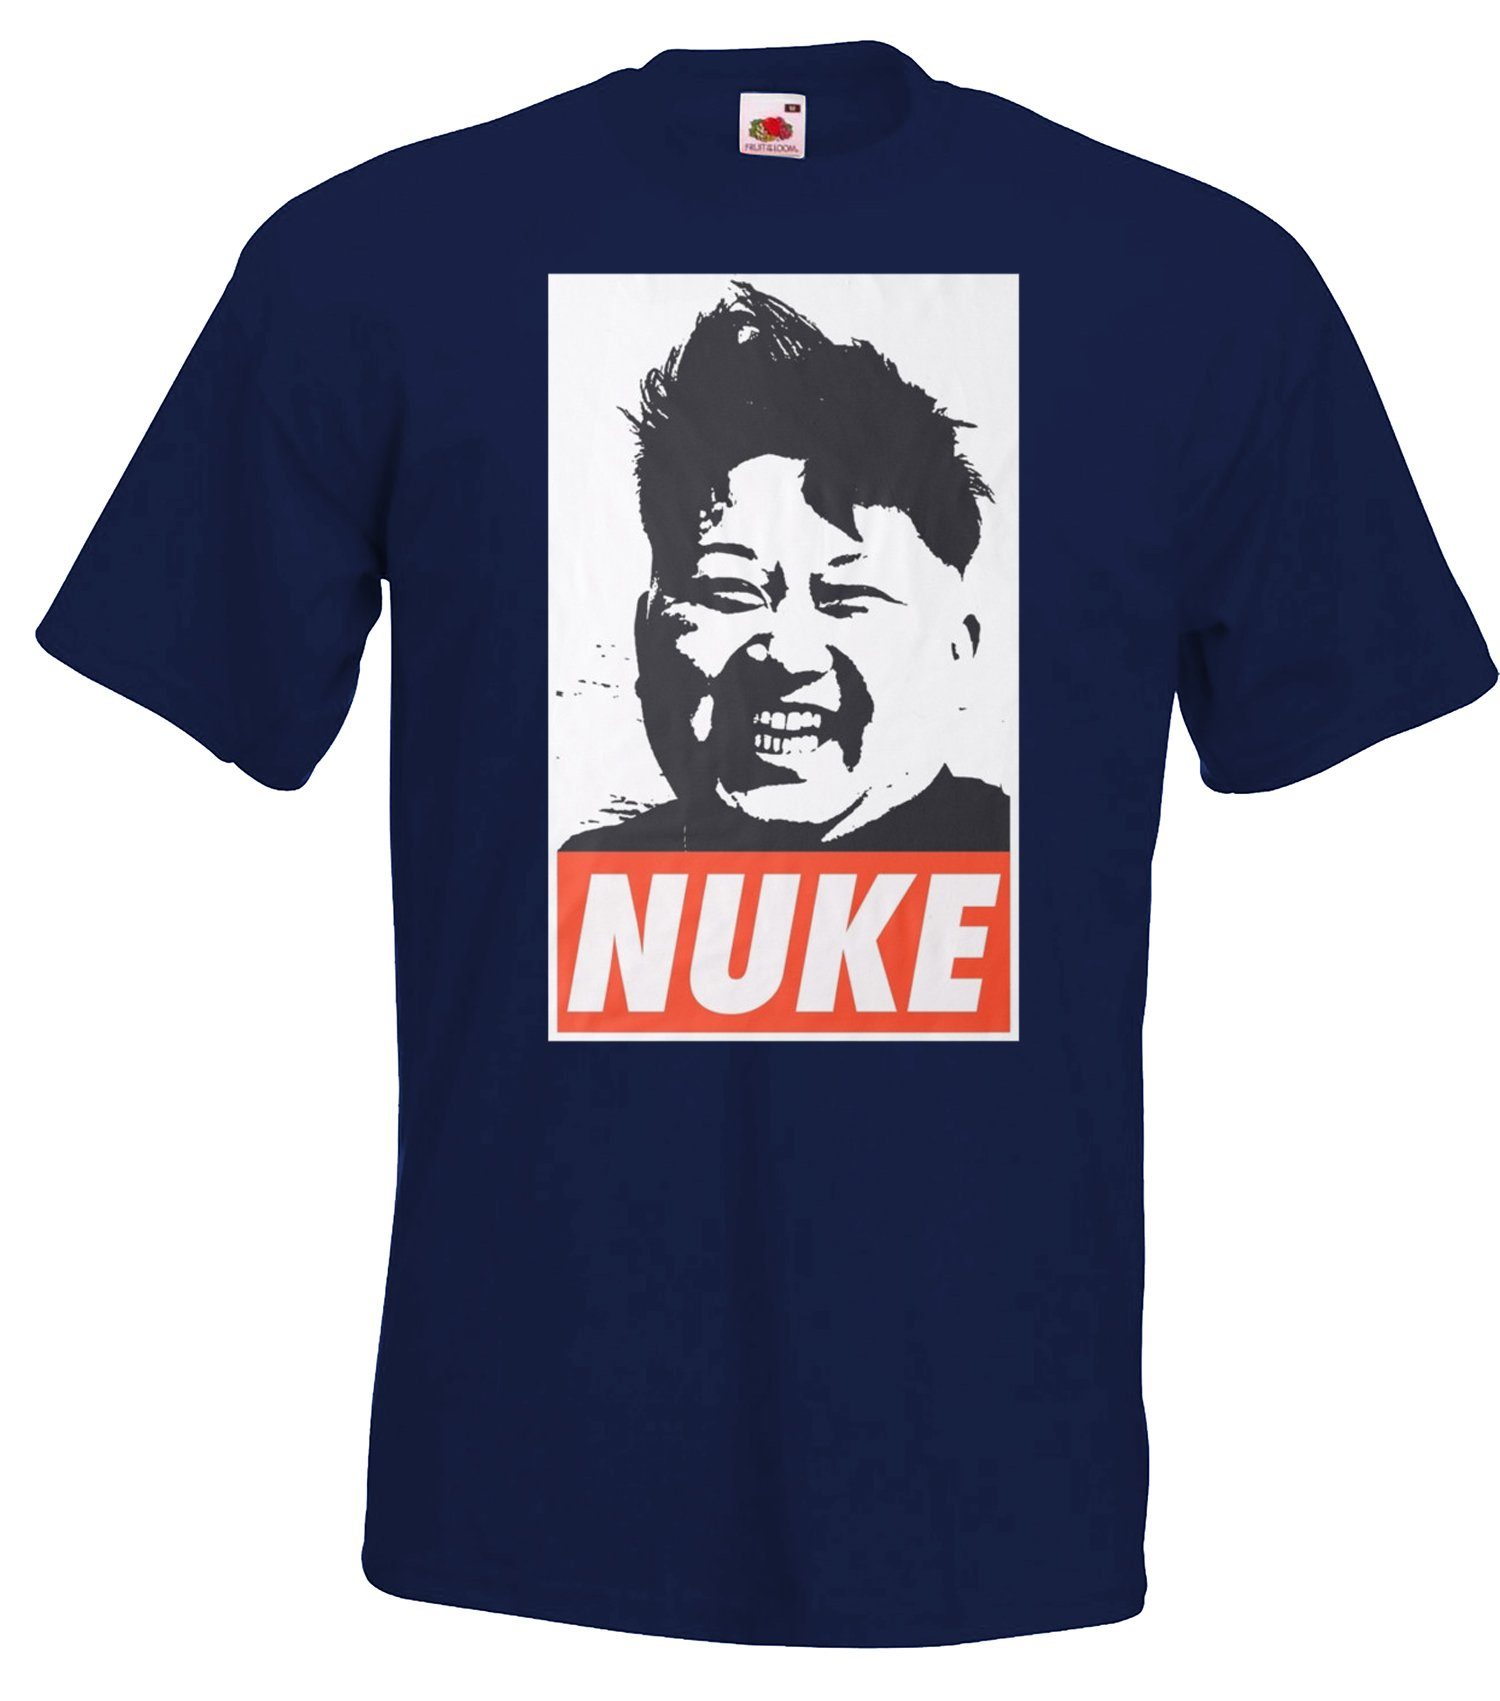 Designz T-Shirt T-Shirt Herren Navyblau Youth mit Frontprint modischem Nuke